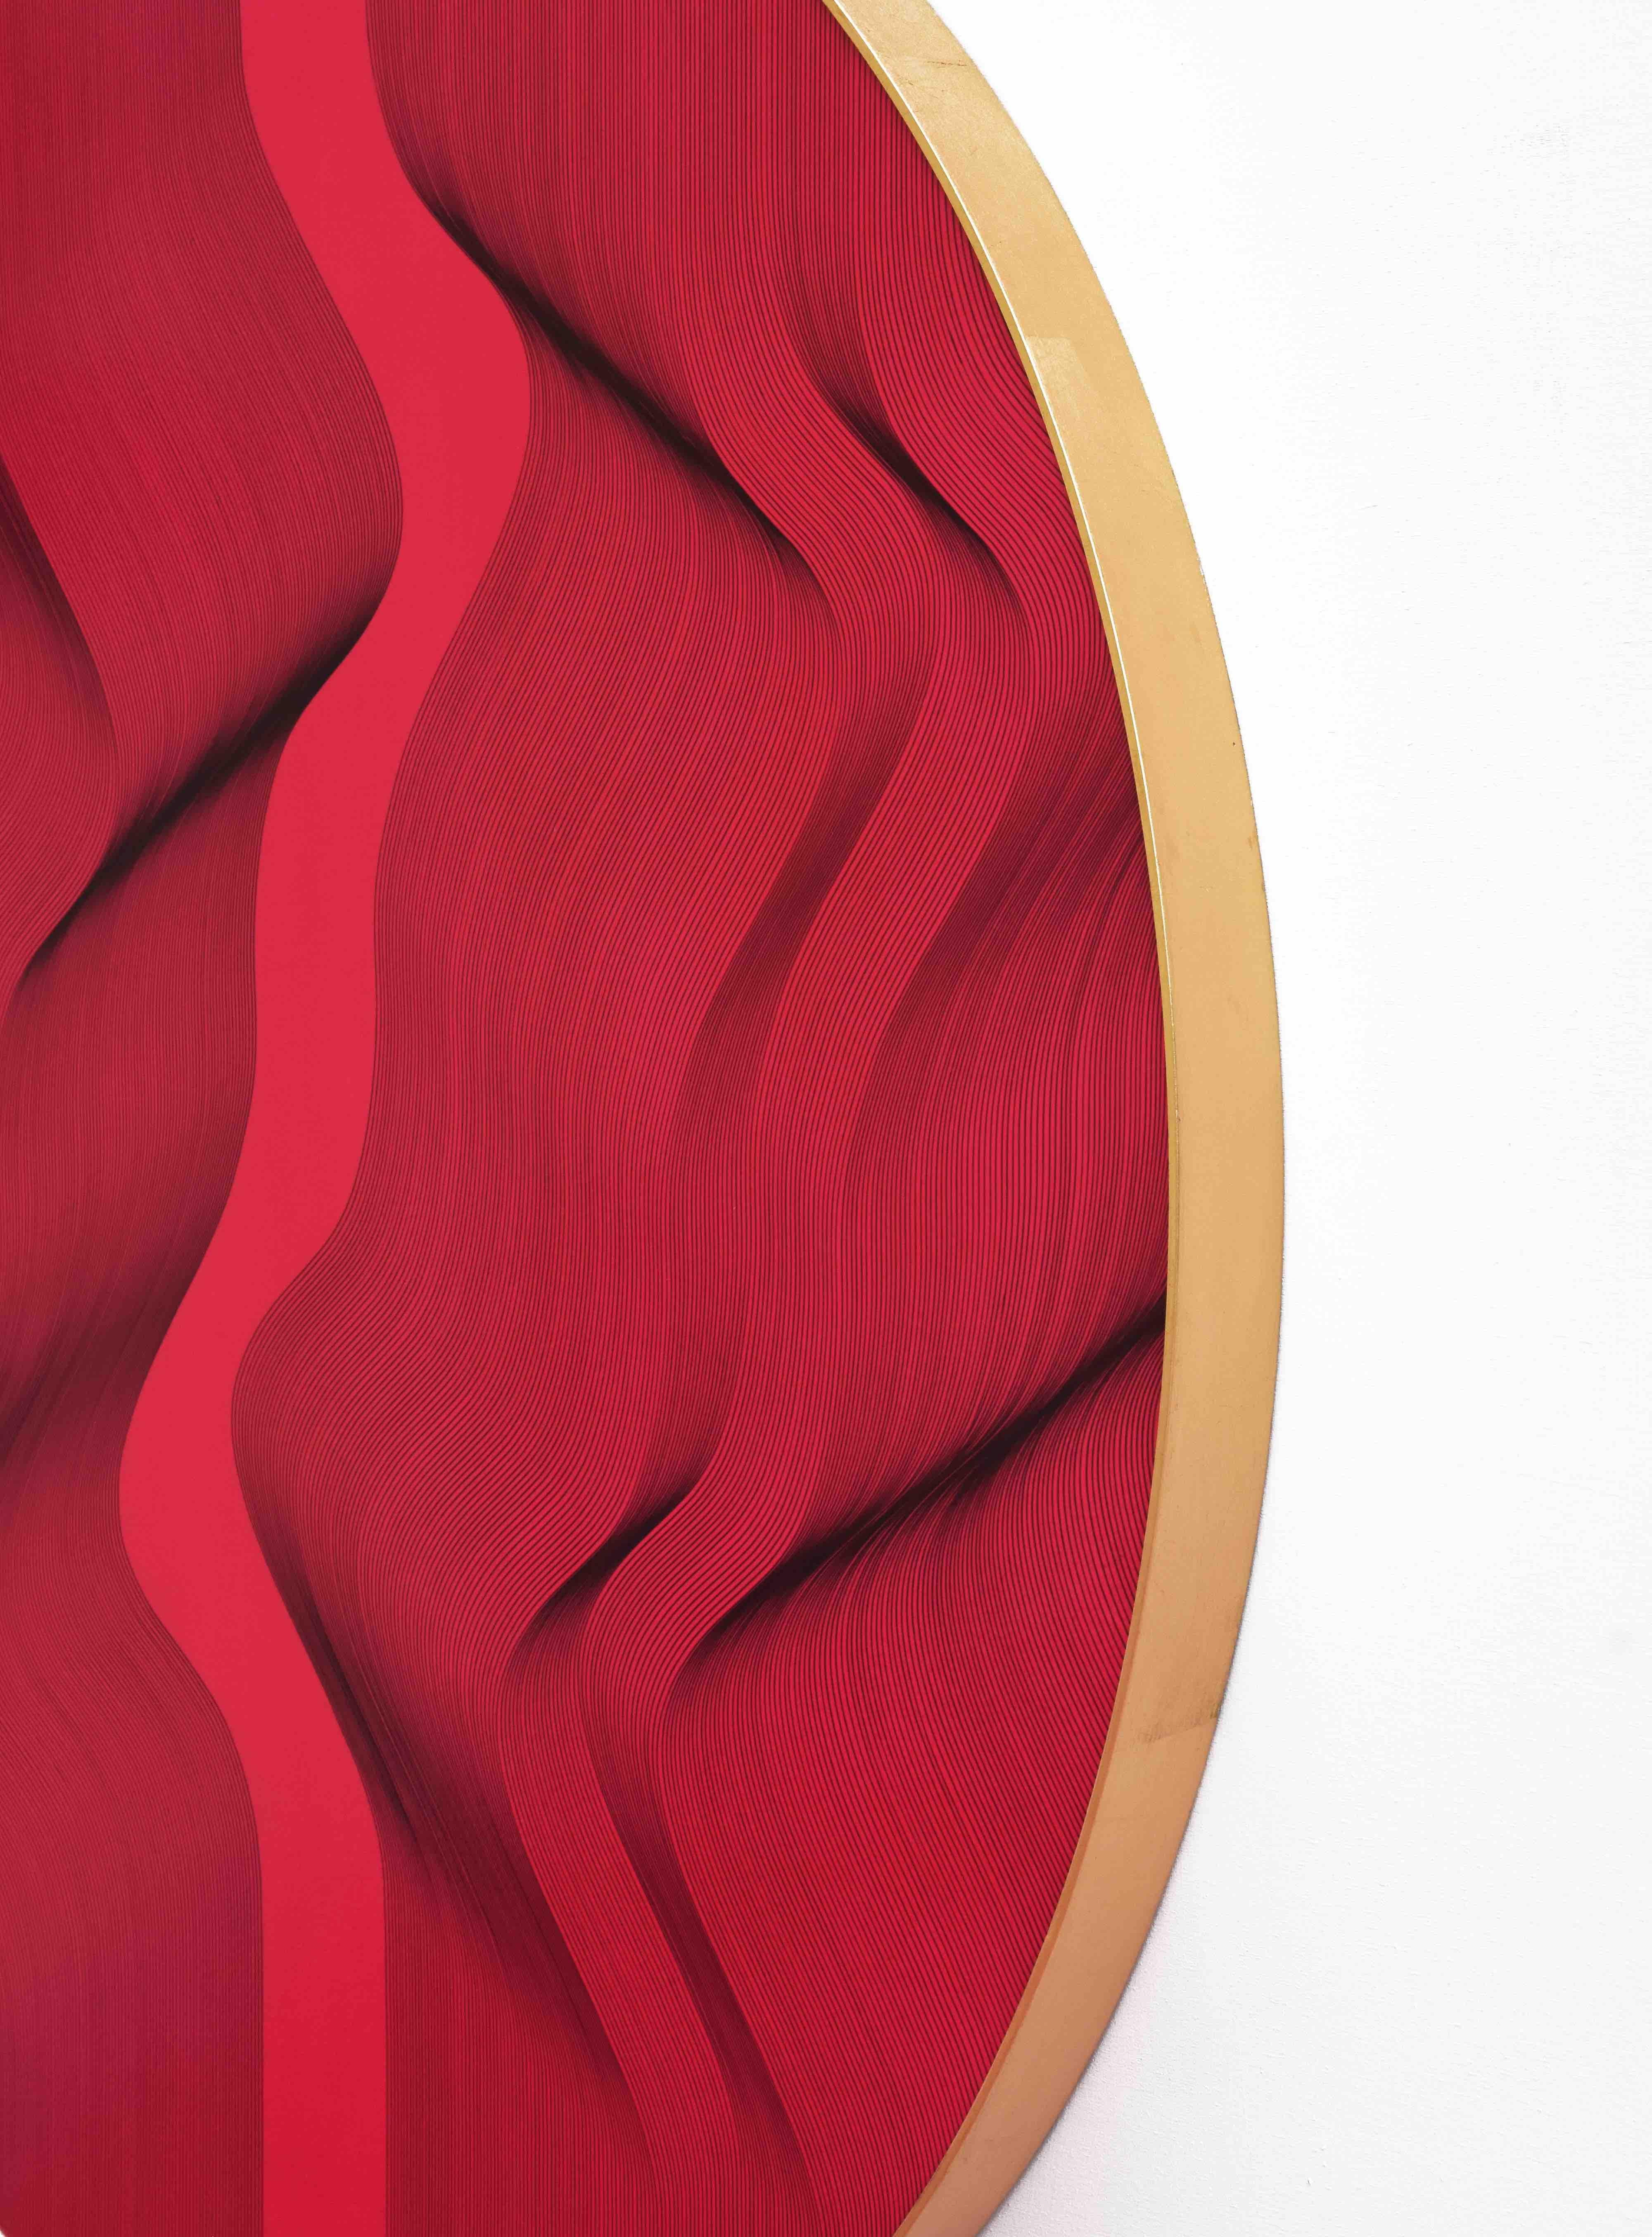 Rotes ovales abstraktes Gemälde 2022 - geometrisches Muster (Geometrische Abstraktion), Painting, von Roberto Lucchetta